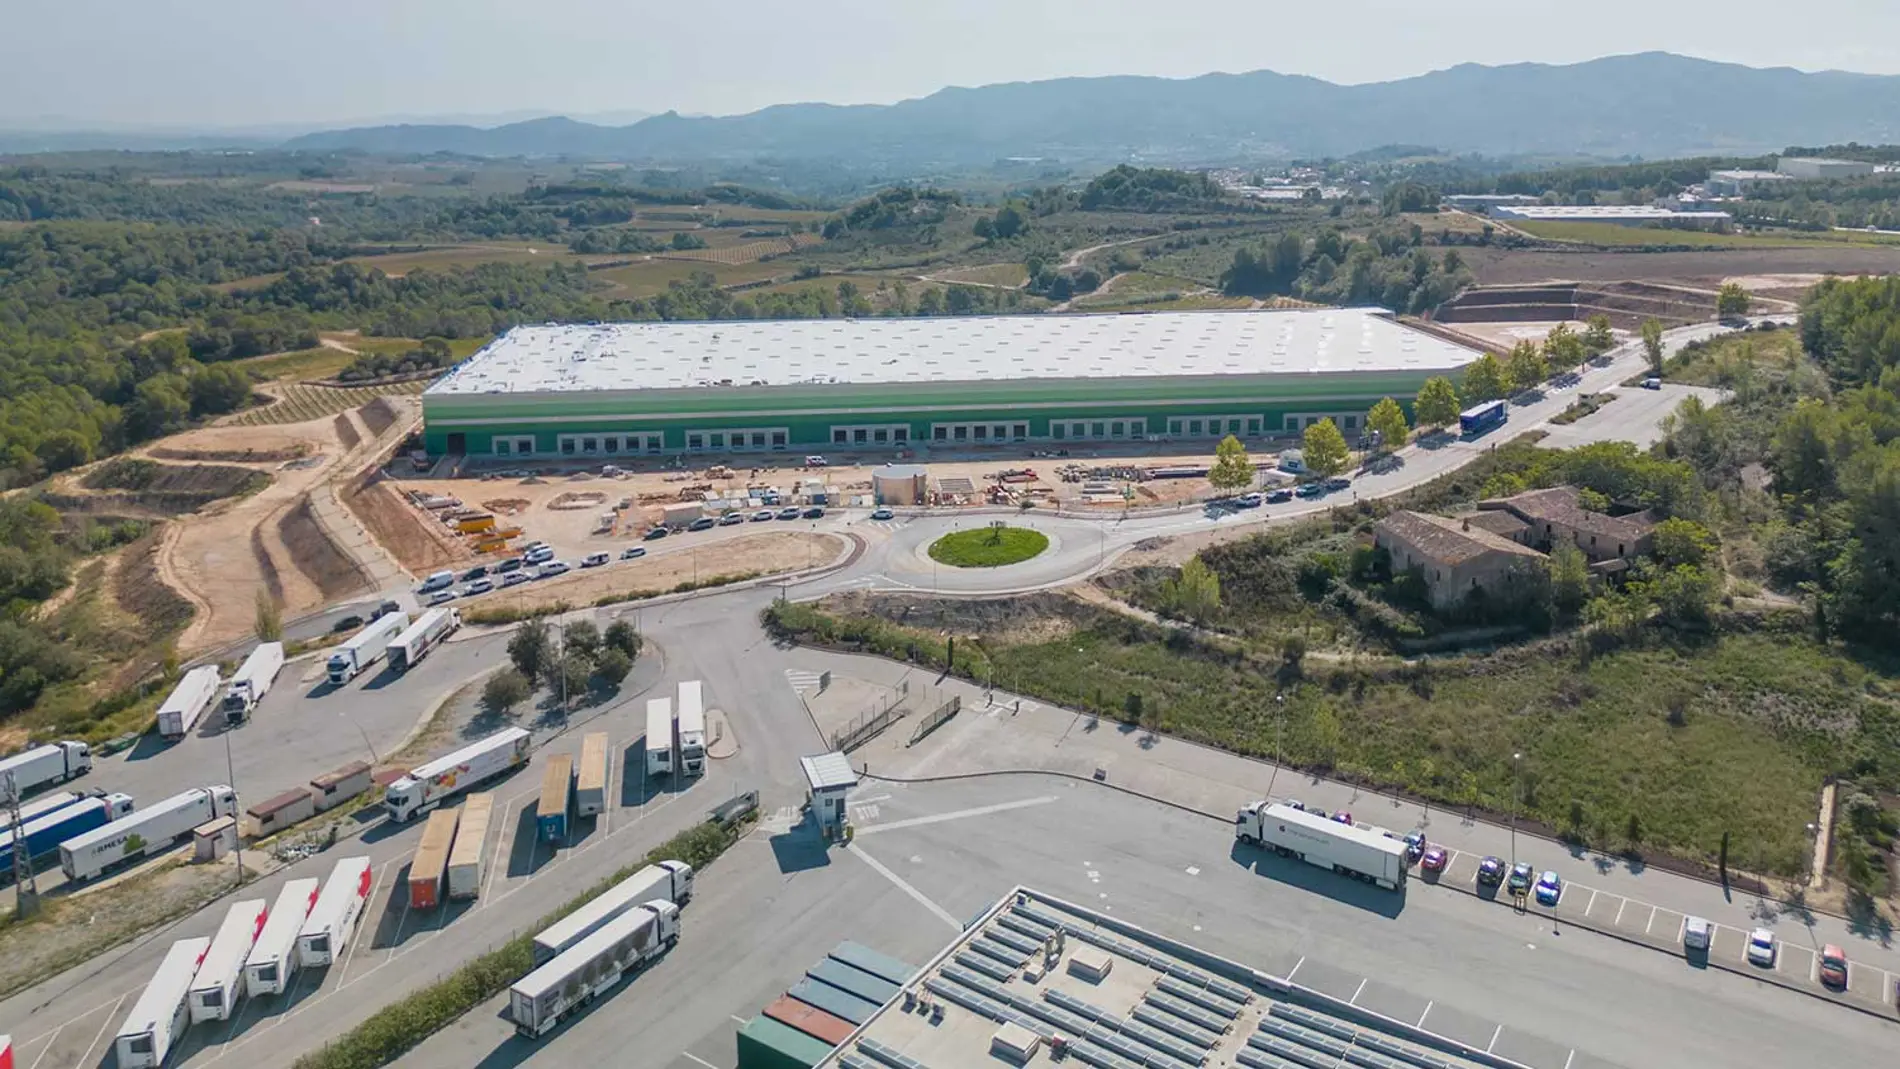 Con una superficie bruta alquilable de 28.828 m2, la plataforma logística cuenta con 37 muelles de carga y 12,2 metros de altura de almacenamiento